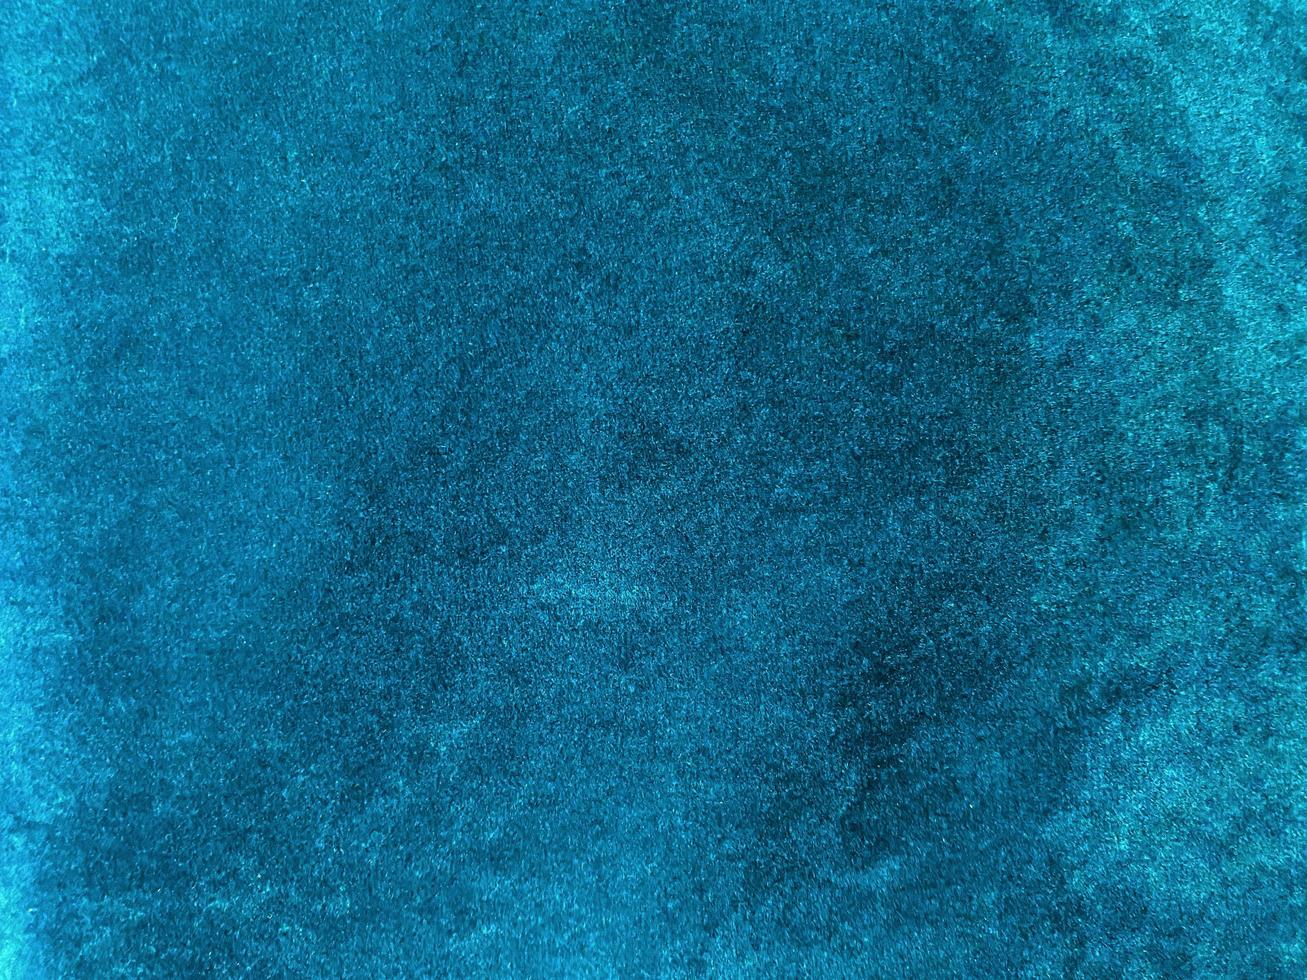 Vải nền xanh đậm được đan thành kiểu lông thú biển mang đến sự sang trọng và hiện đại cho bất kỳ không gian nào. Tông màu xanh đậm kết hợp cùng chất liệu lông thú đem lại sự bí ẩn và quyến rũ như những cánh hoa quyến rũ dưới đáy biển.